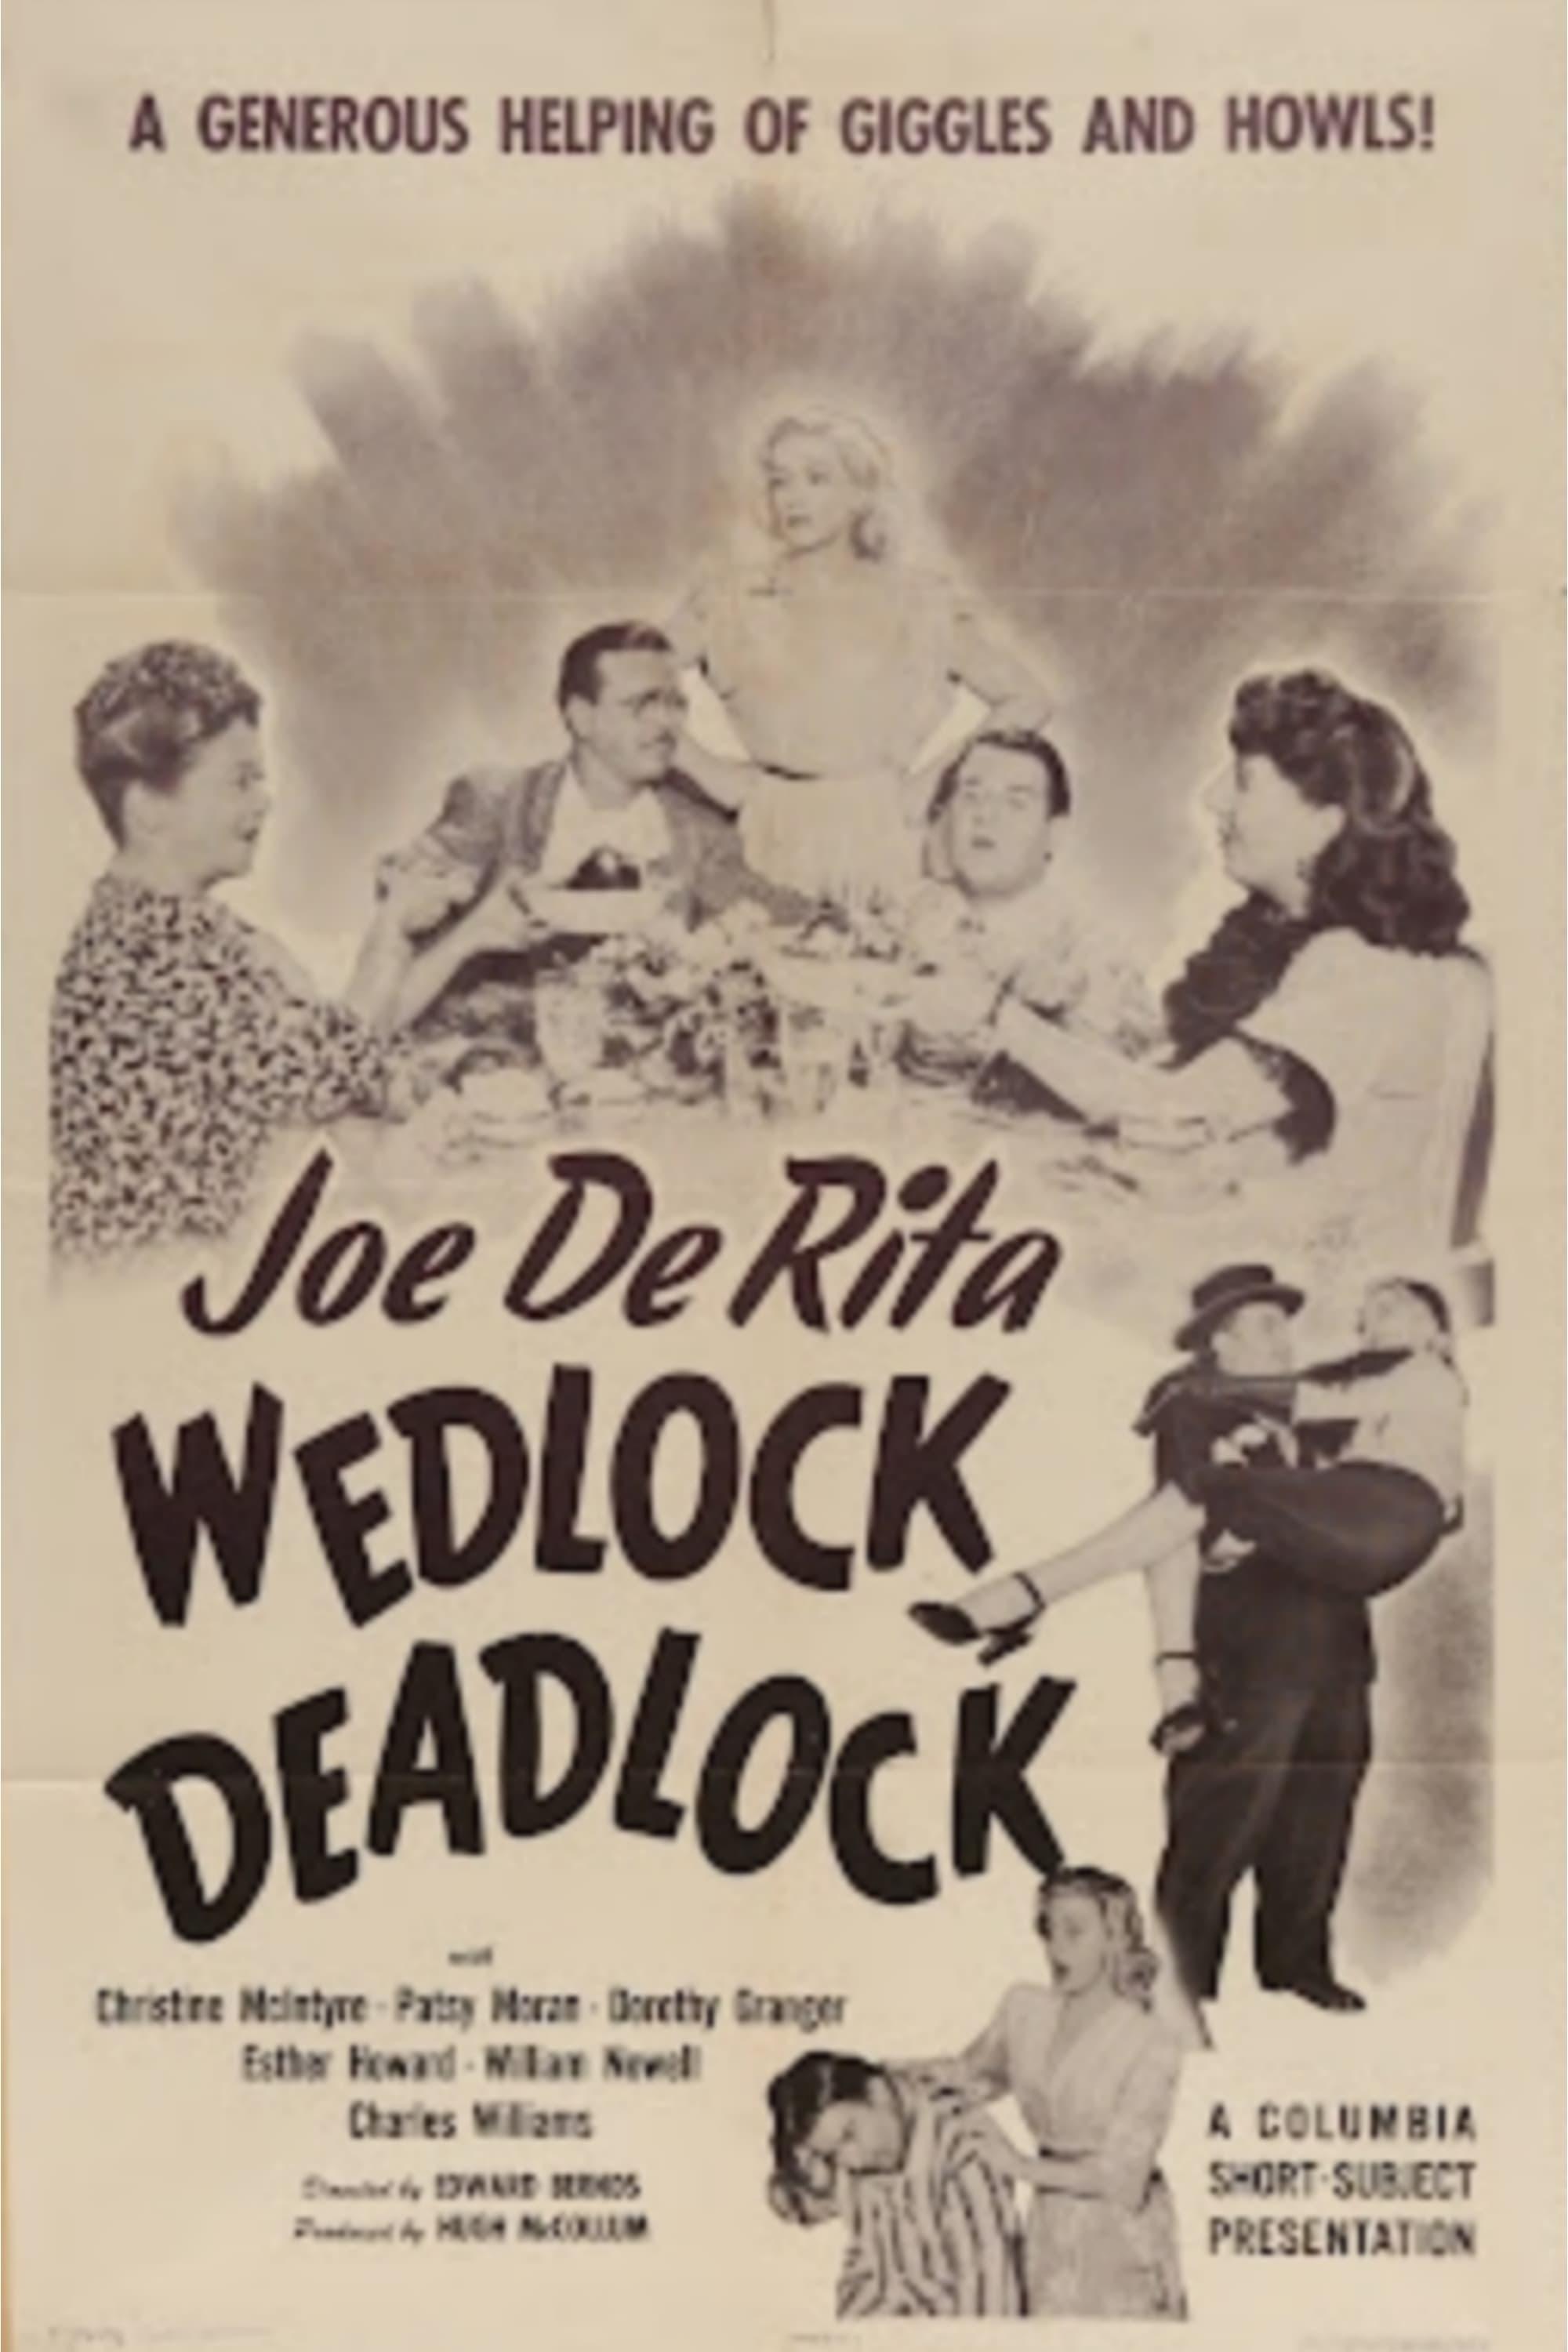 Wedlock Deadlock poster